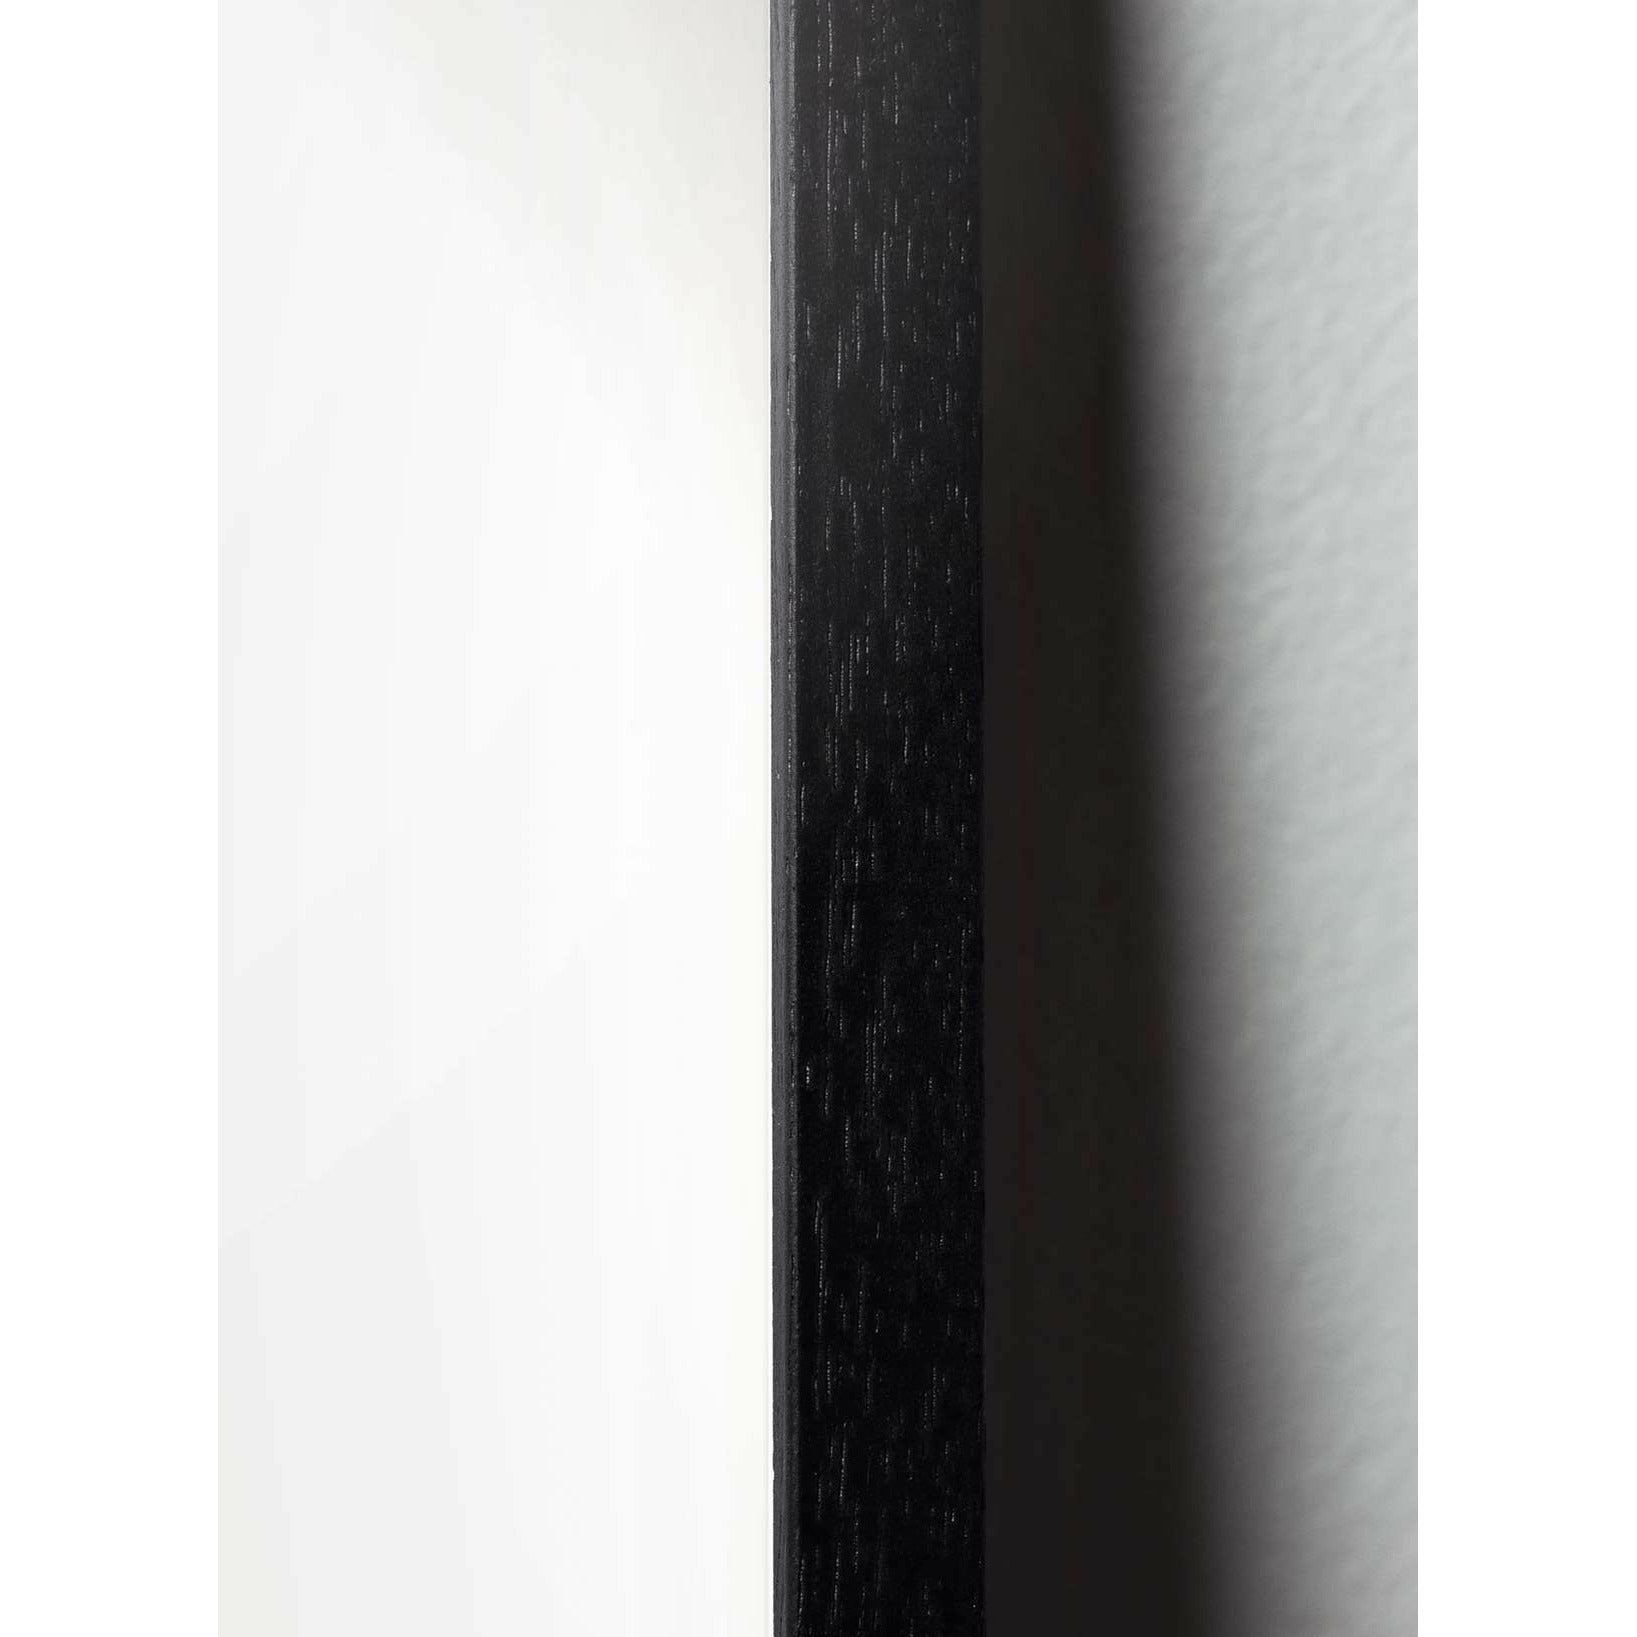 Brainchild Äggslag affisch, ram i svart målat trä 50x70 cm, vit bakgrund